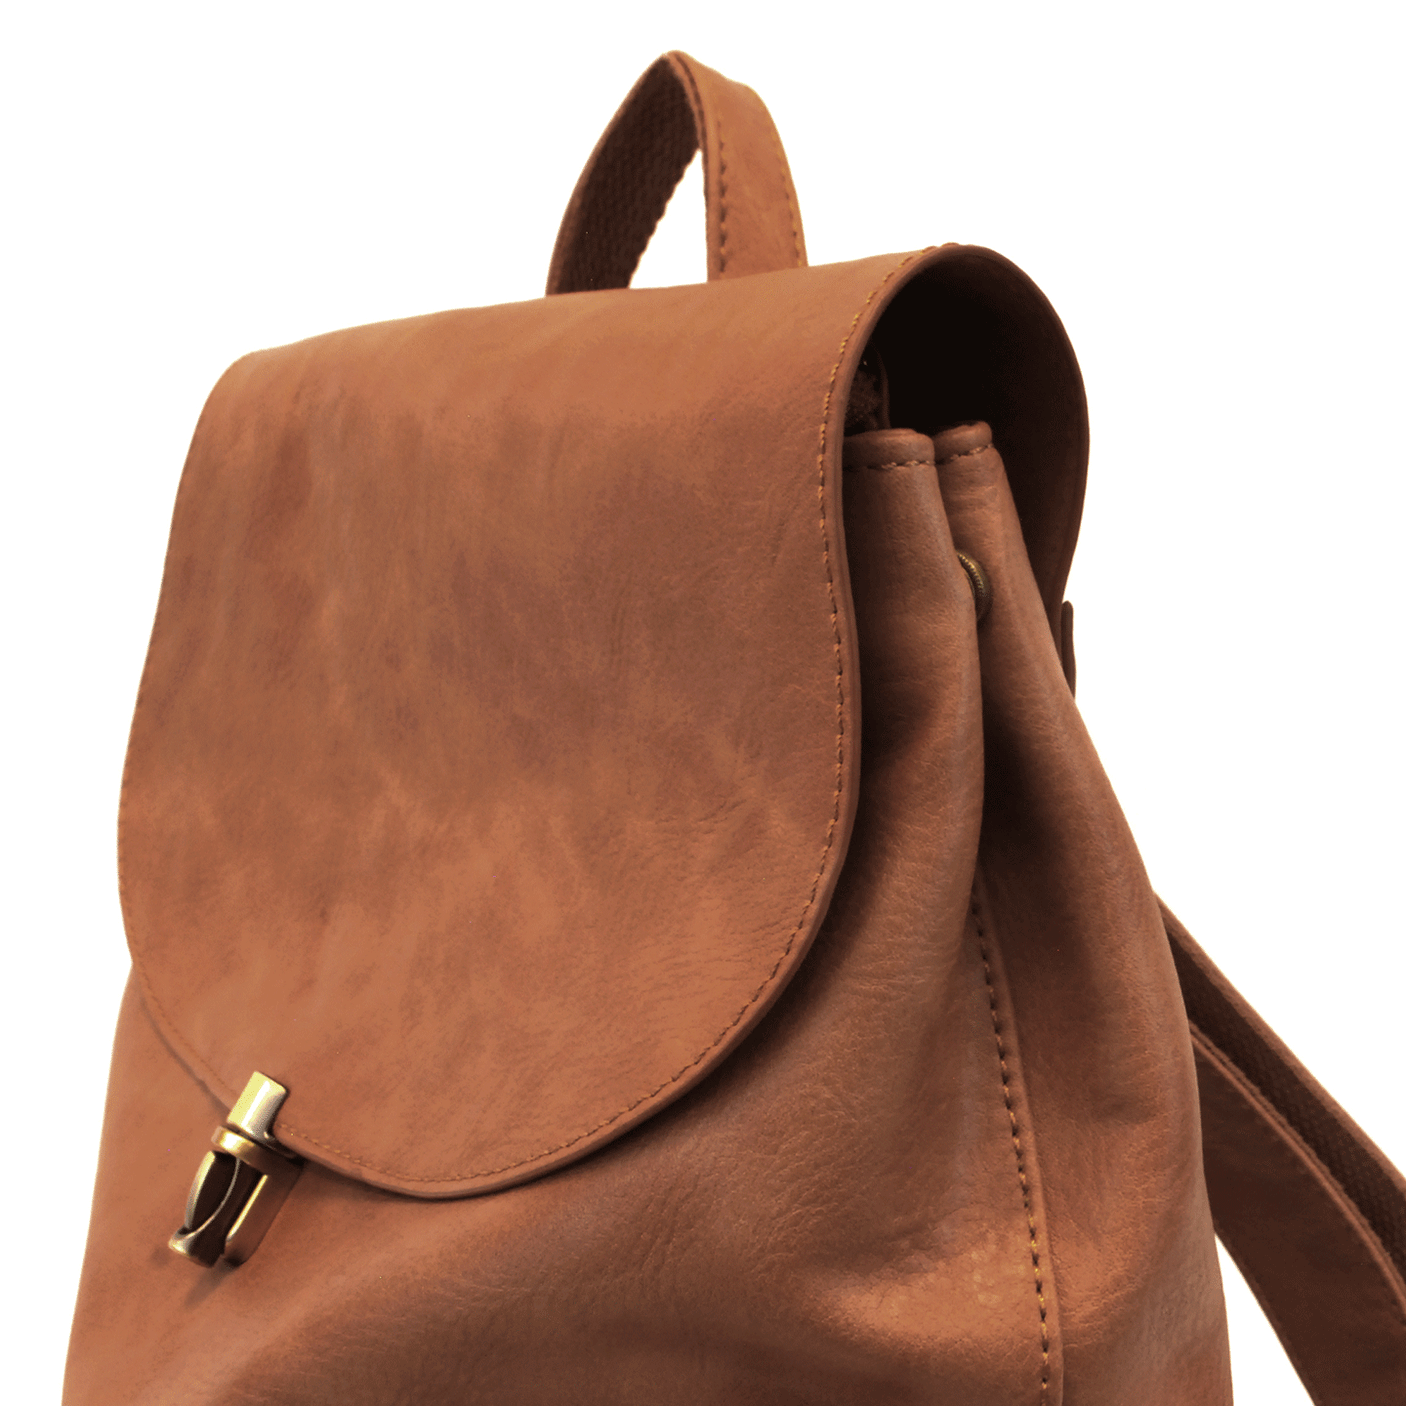 Saddle - Vegan Leather Colette Backpack